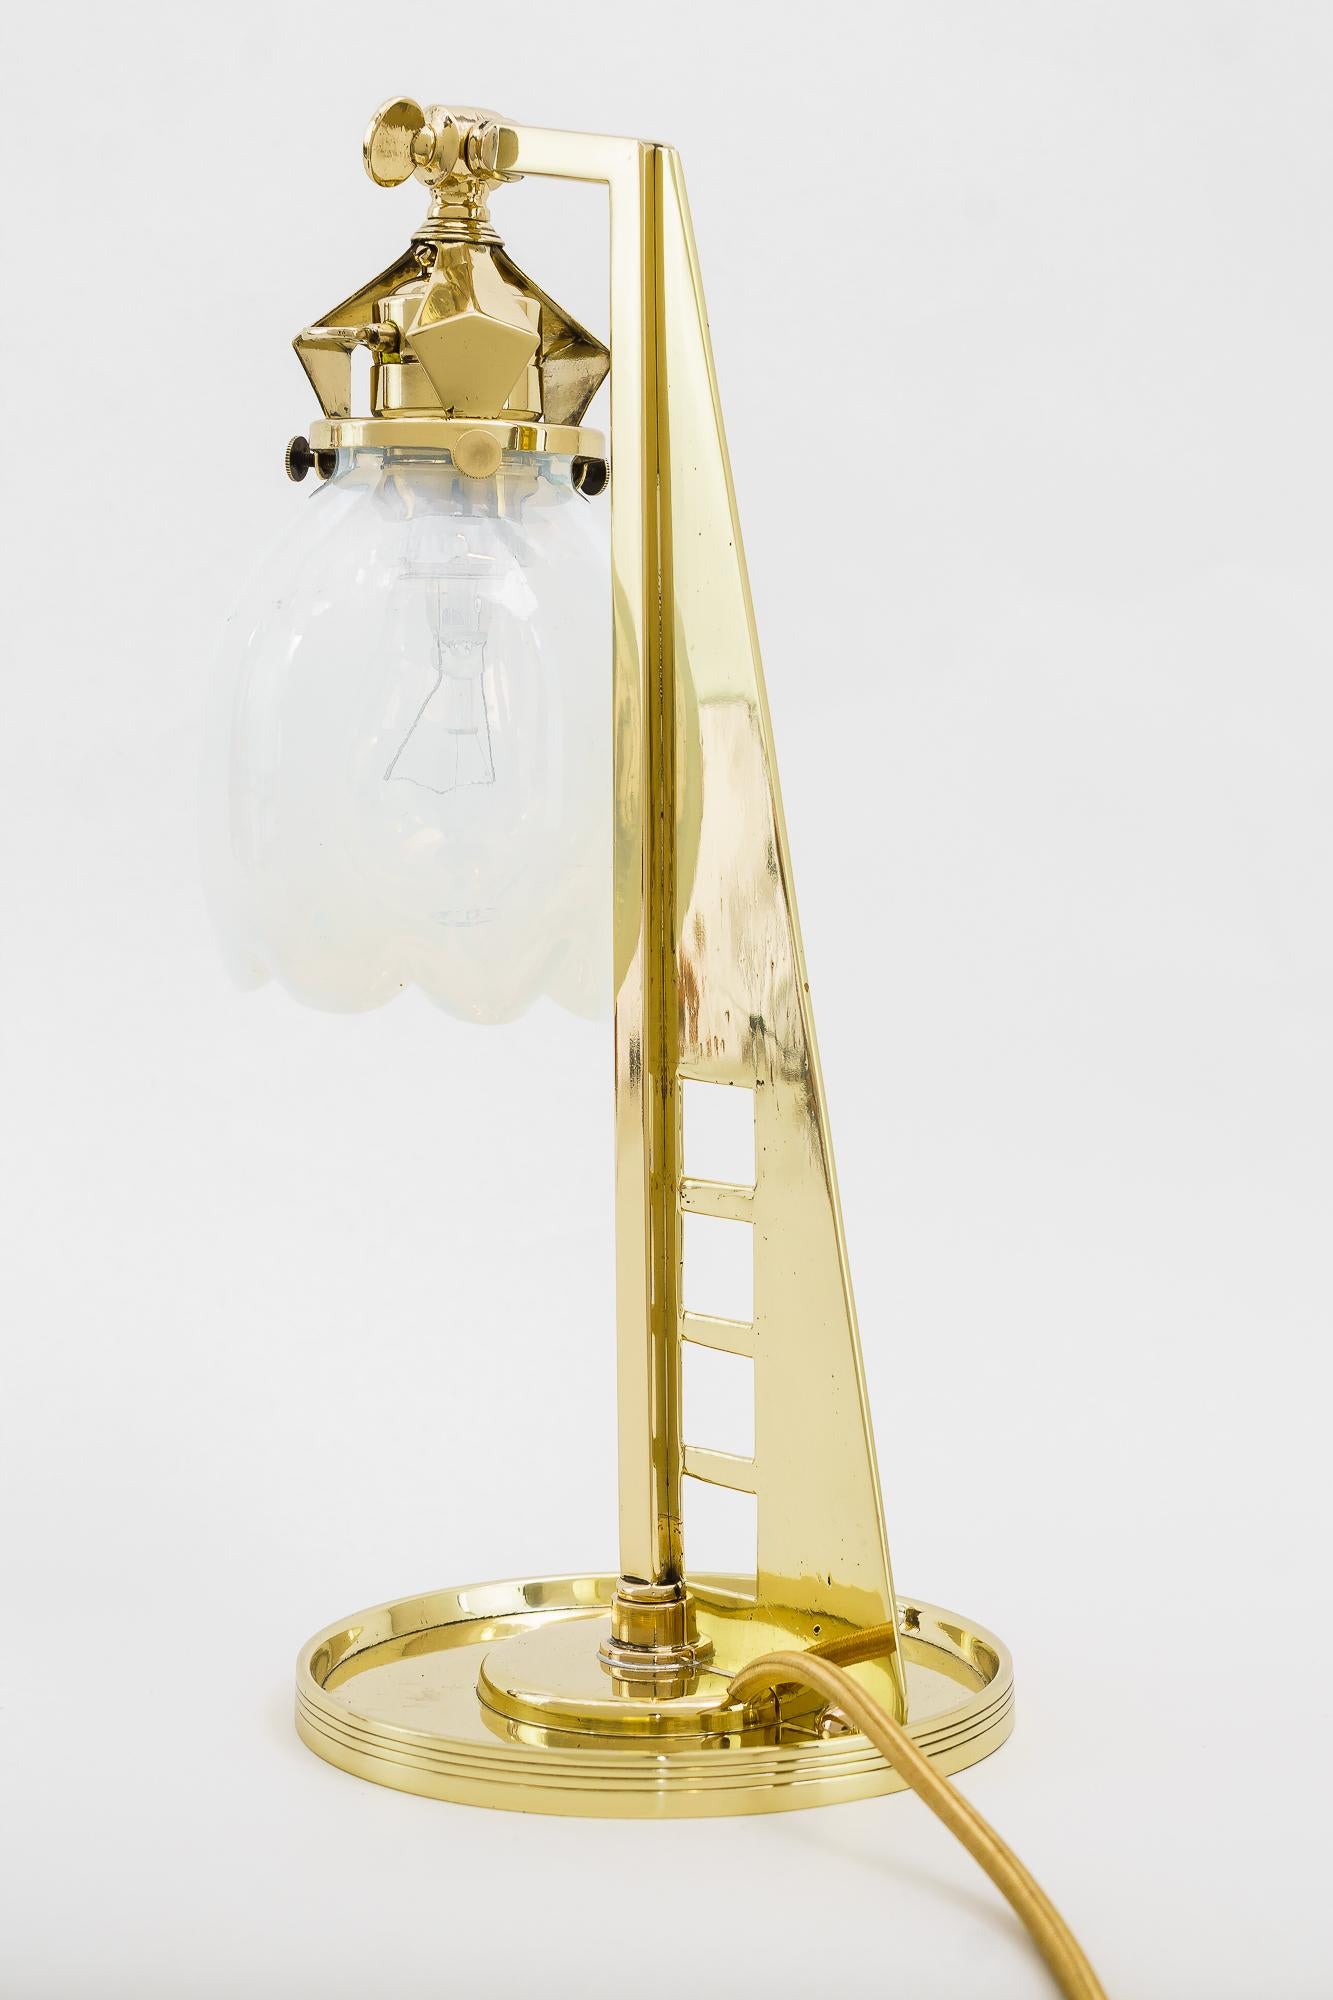 Seltene jugendstil Tischlampe wien um 1910
Poliert und einbrennlackiert
Originaler Opalglas-Schirm.